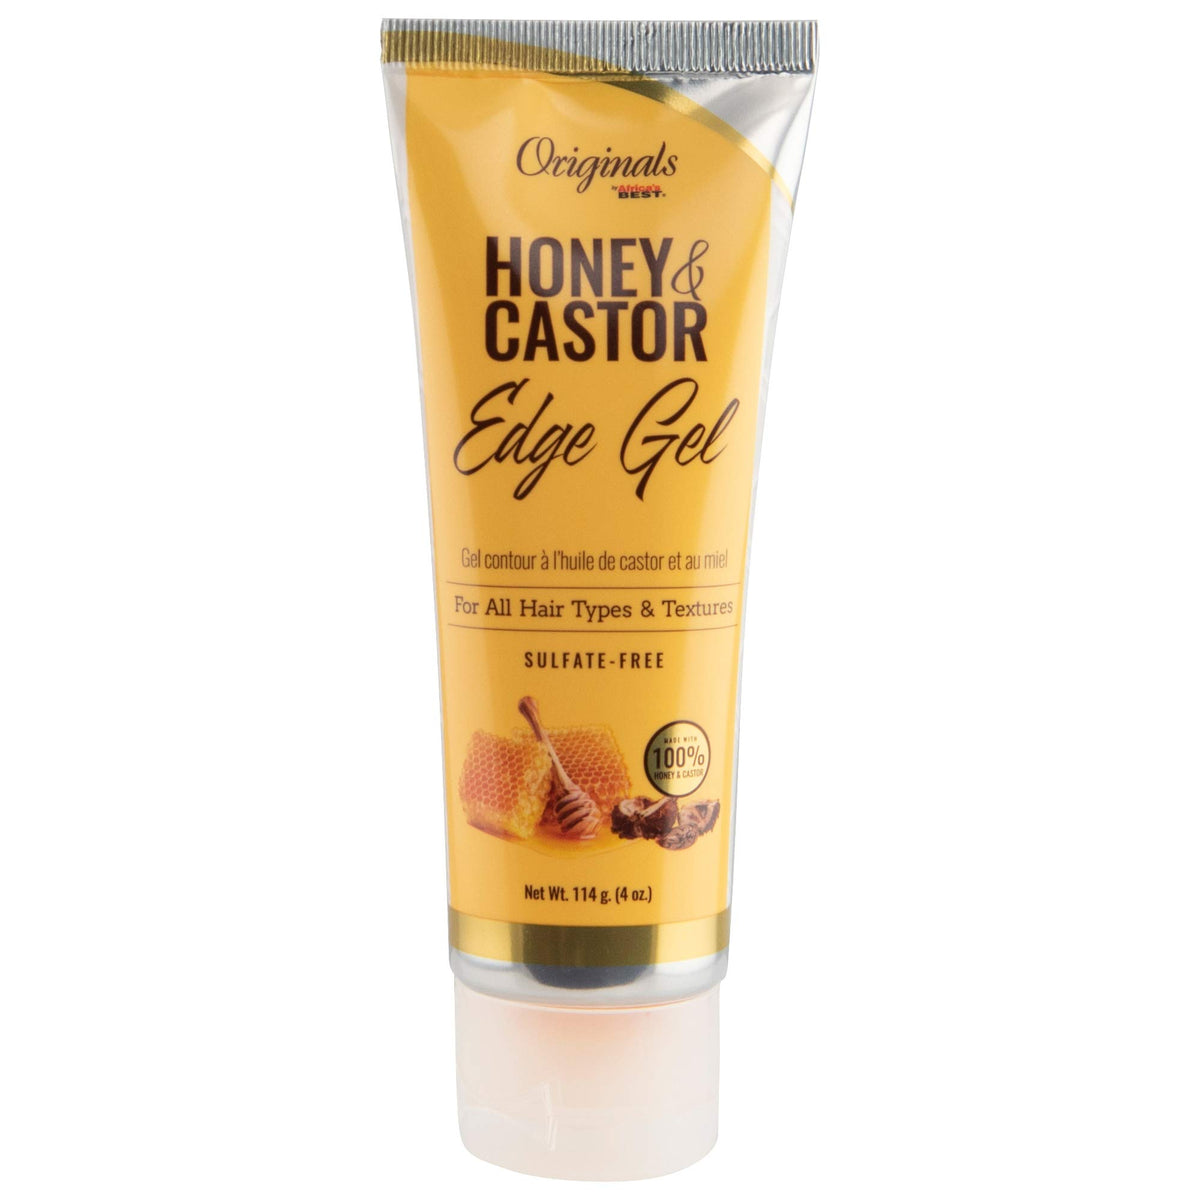 Honey & Castor Edge Gel